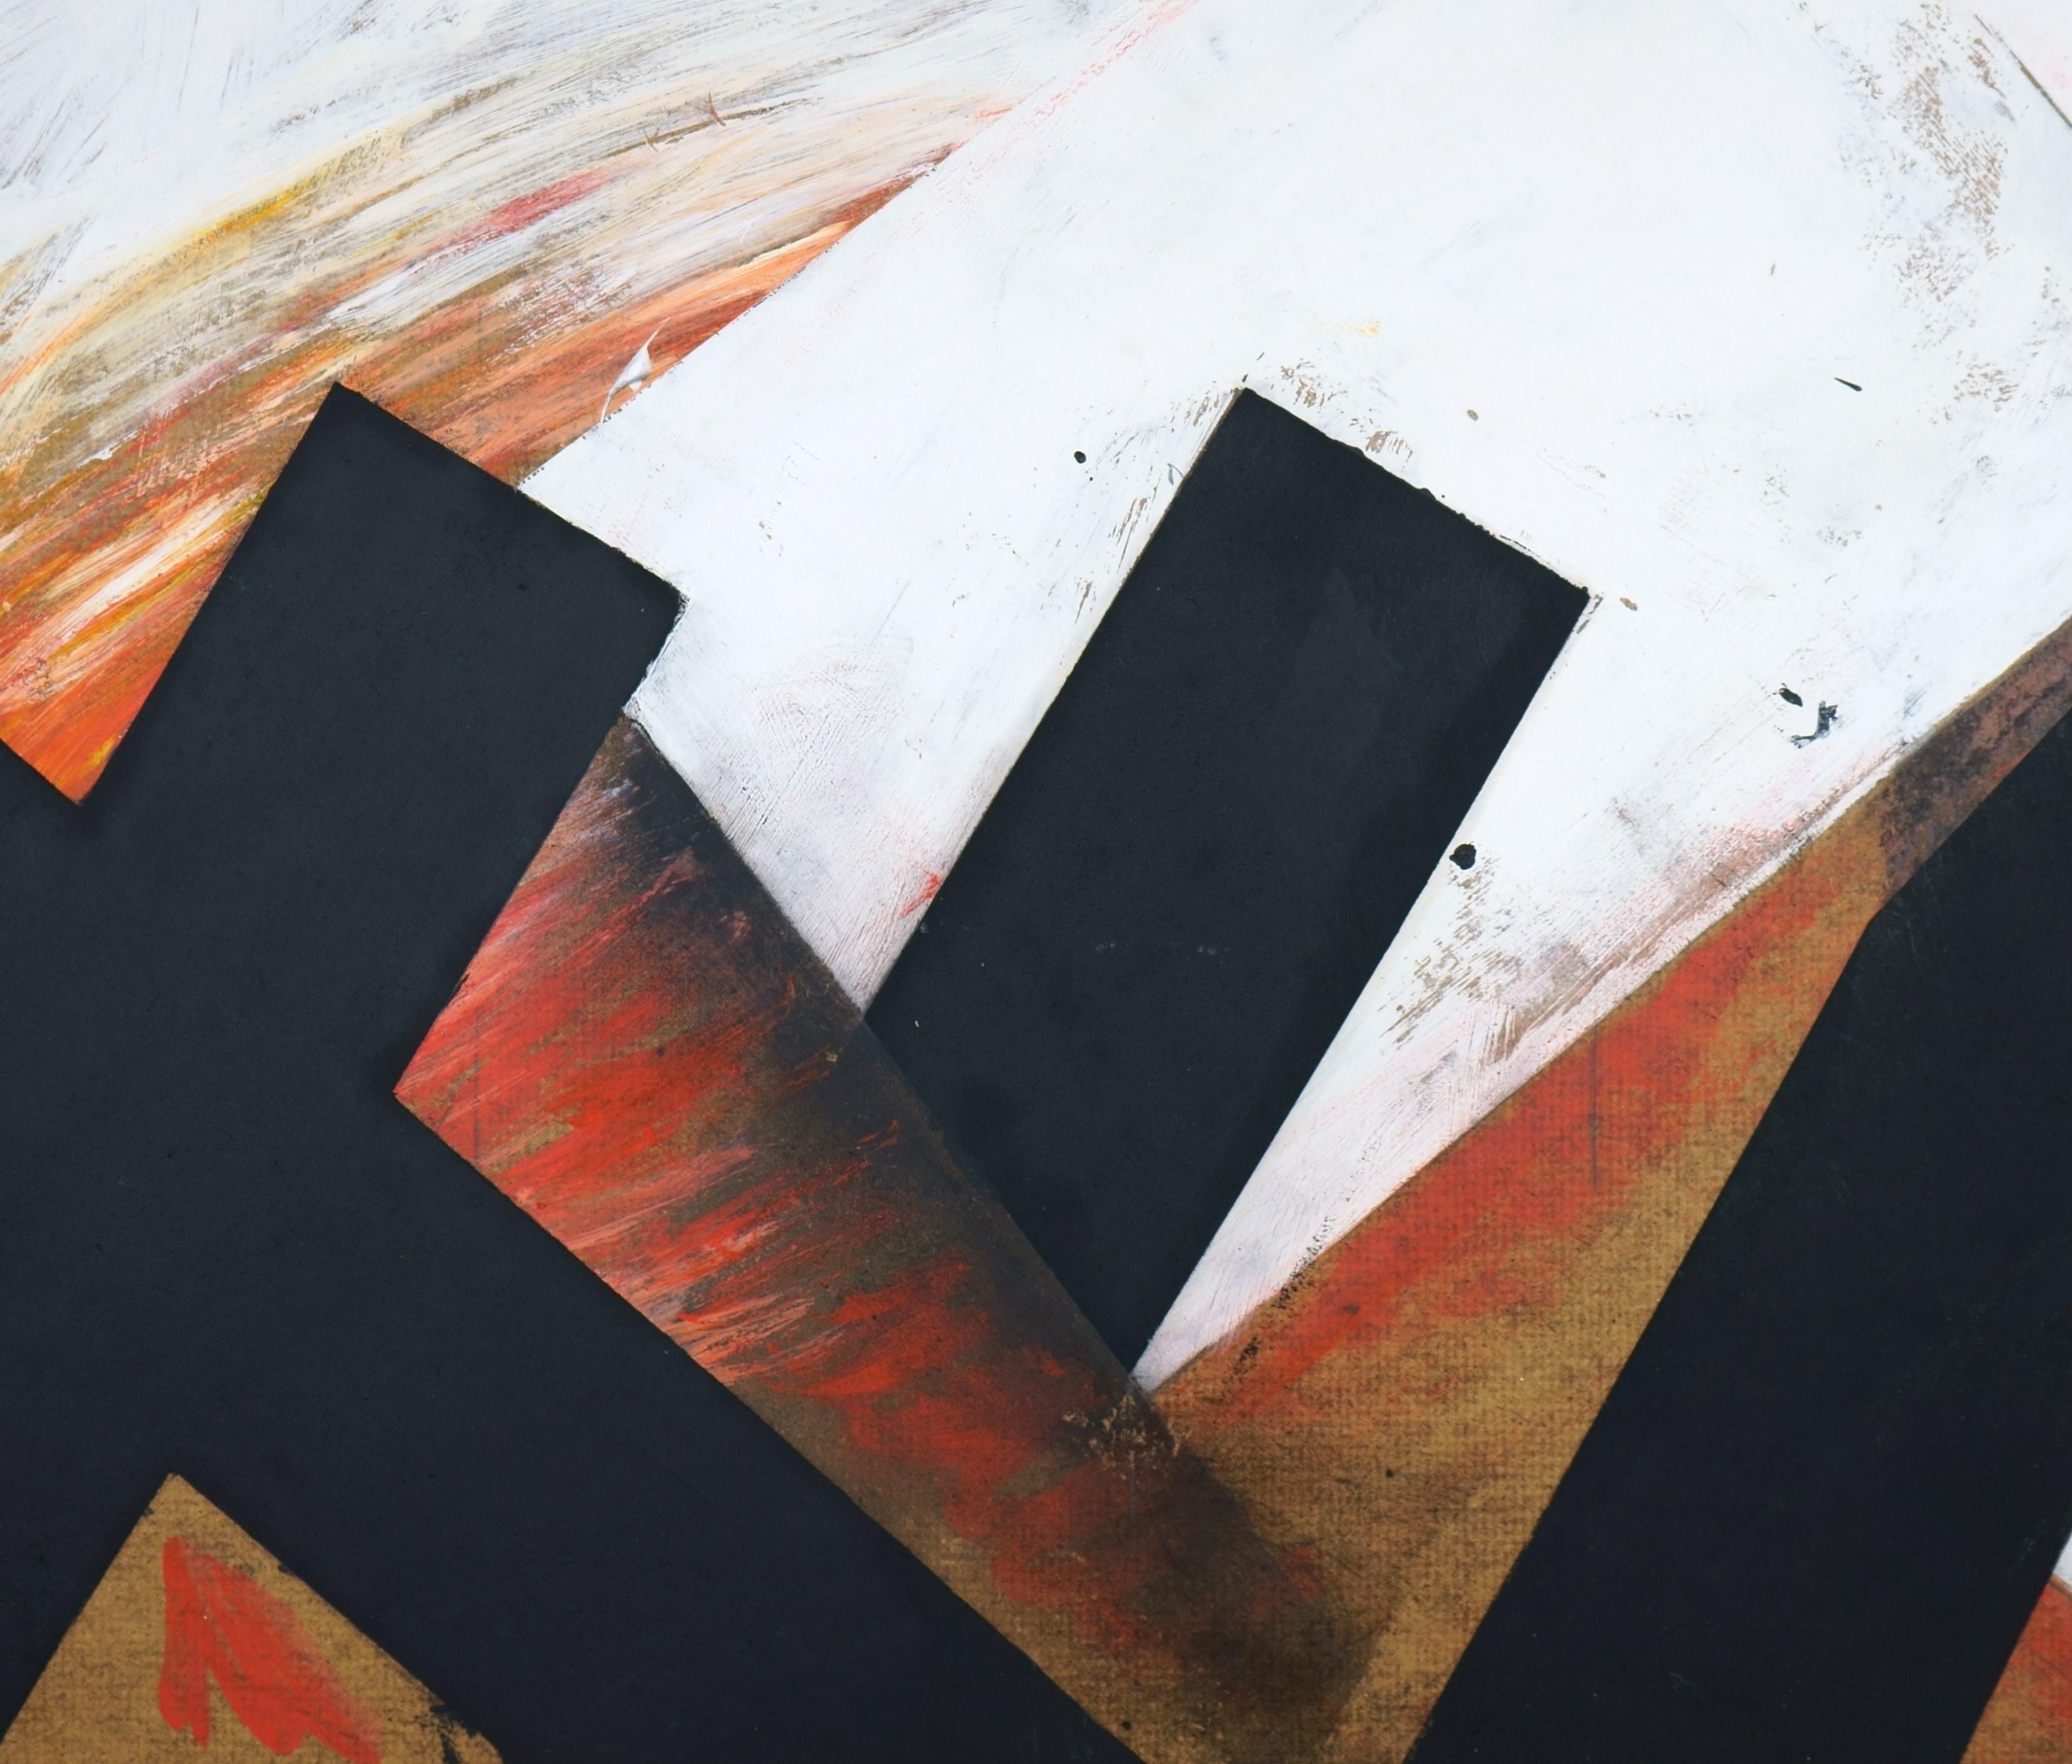 surfaces de forme noire sur fond rouge / - La double origine de la peinture - - Painting de Jürgen Möbius